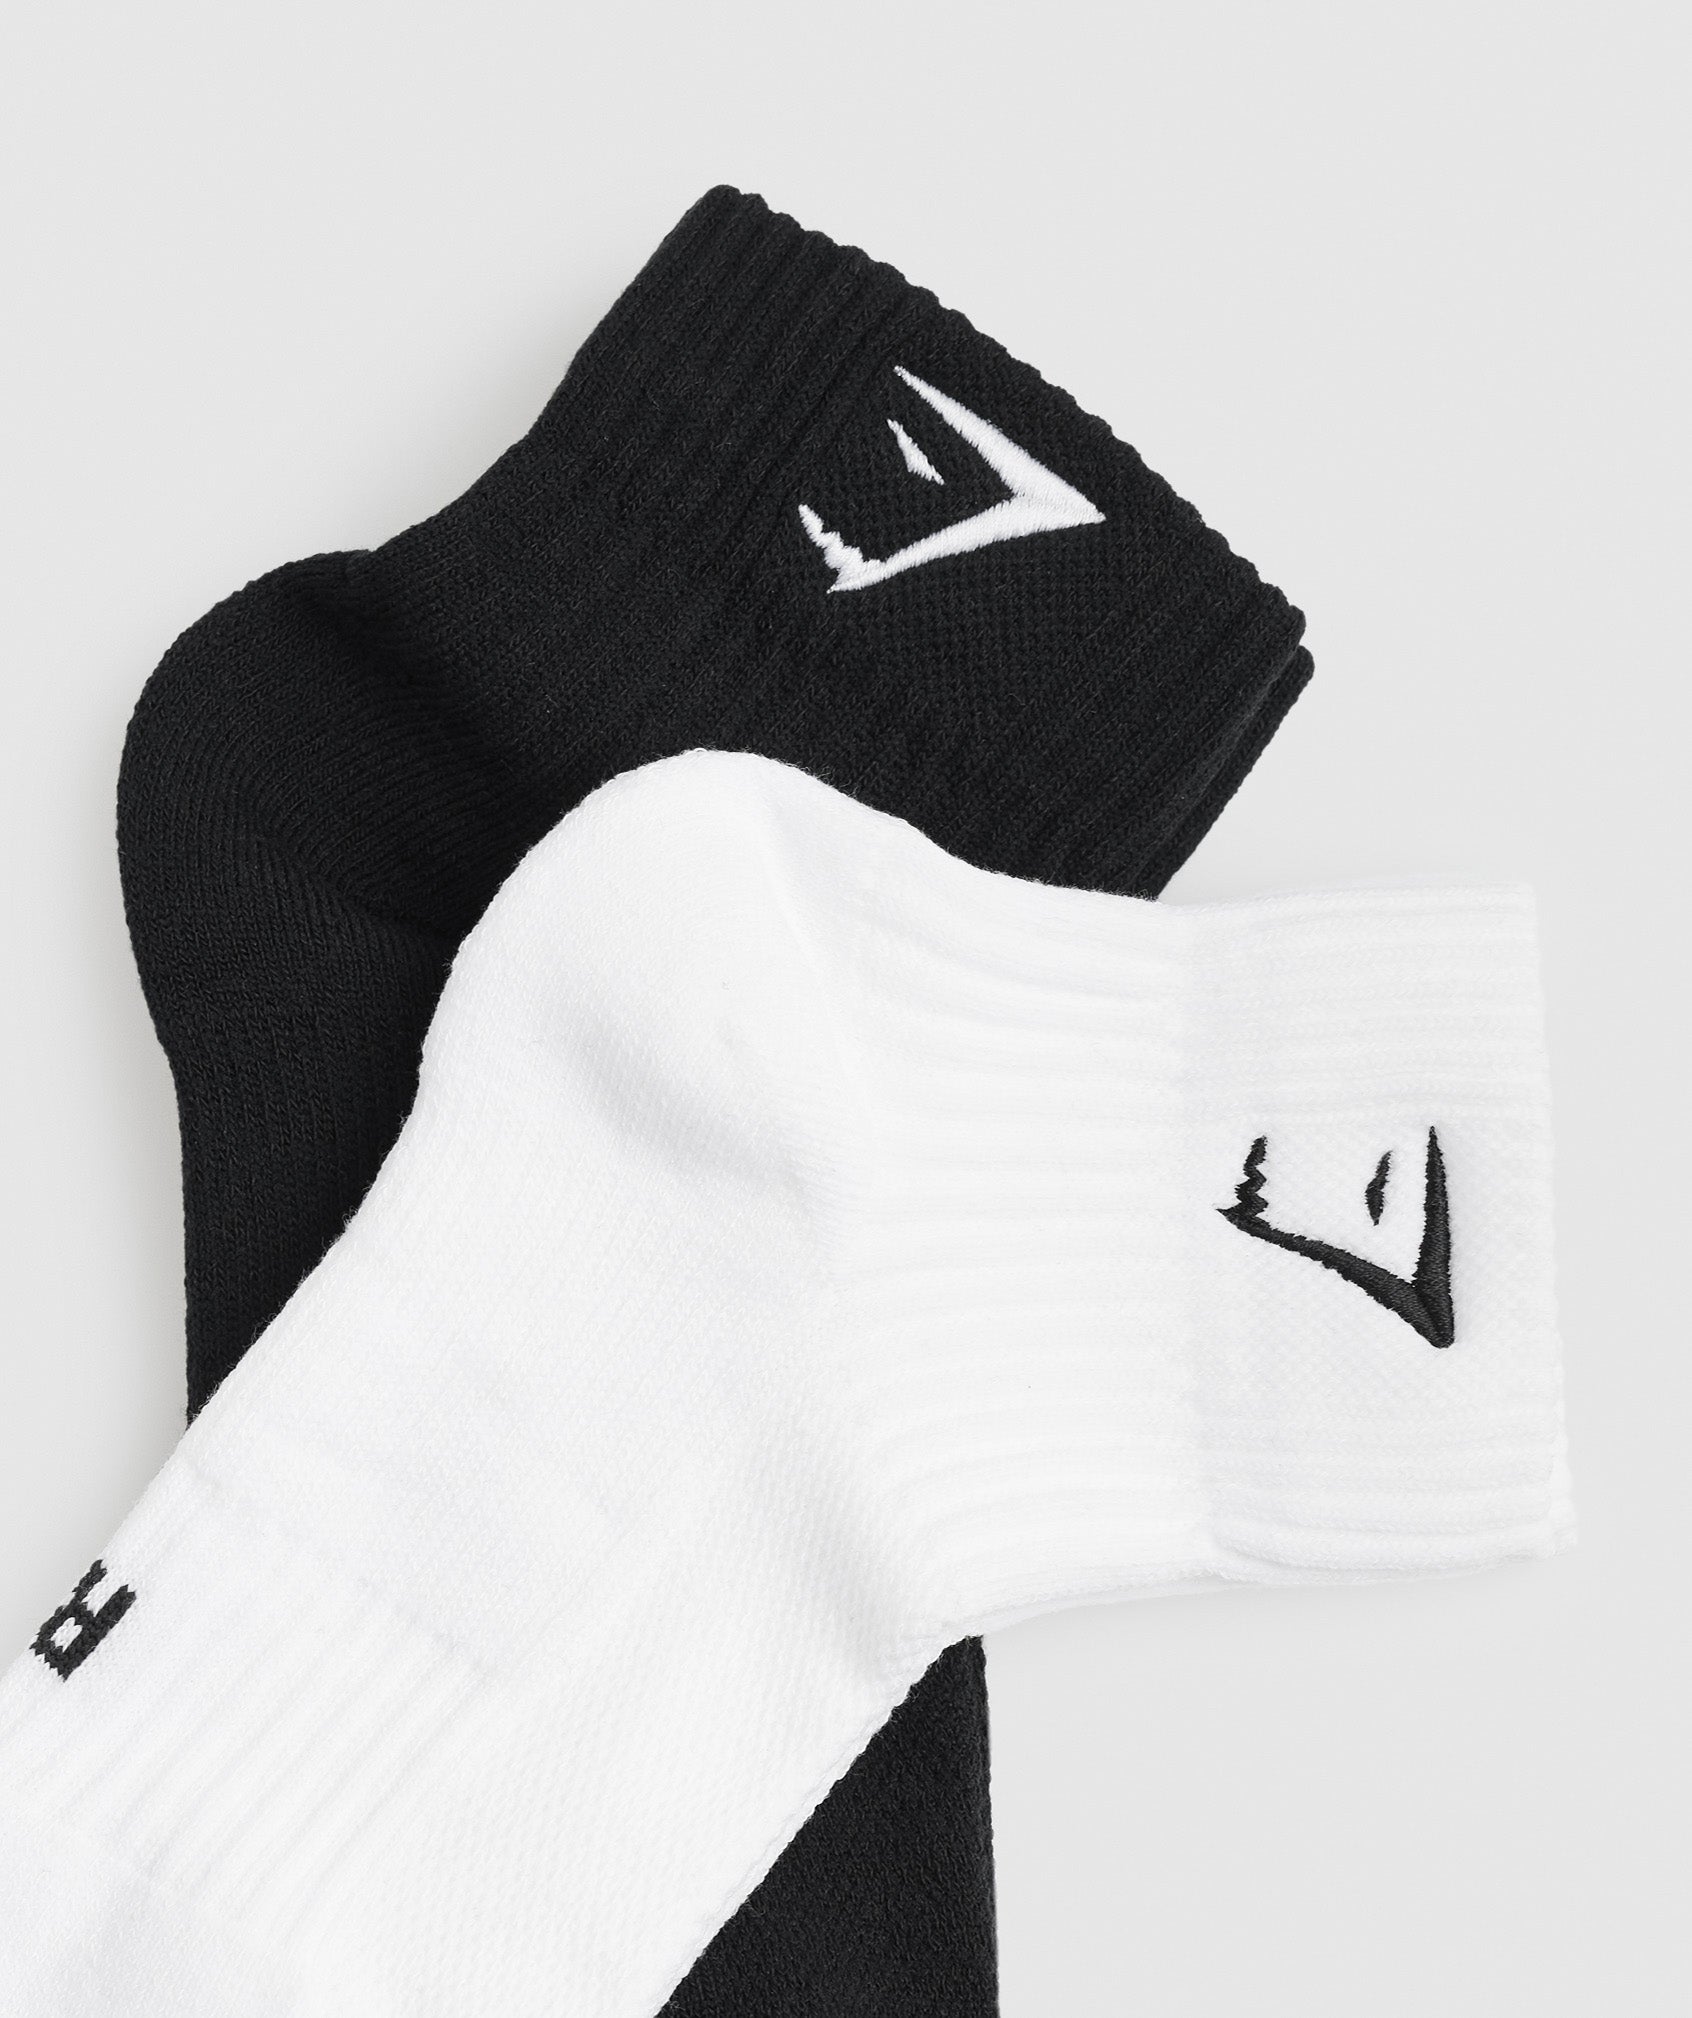 Sharkhead Embroidered Quarter Socks 2pk in White/Black - view 2